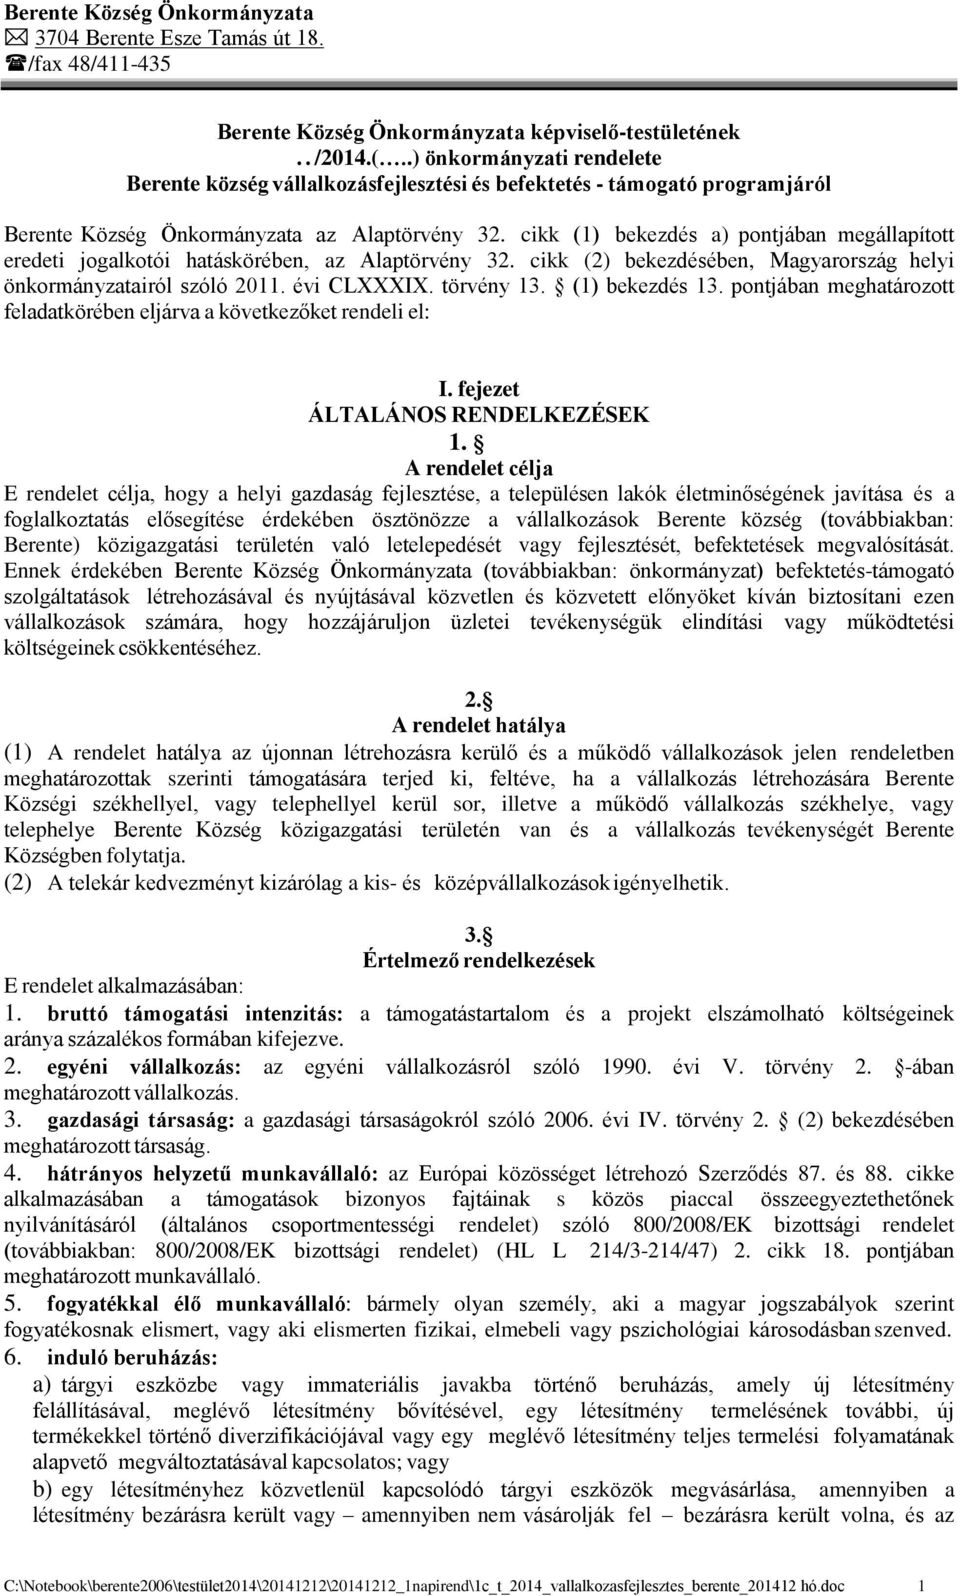 cikk (1) bekezdés a) pontjában megállapított eredeti jogalkotói hatáskörében, az Alaptörvény 32. cikk (2) bekezdésében, Magyarország helyi önkormányzatairól szóló 2011. évi CLXXXIX. törvény 13.